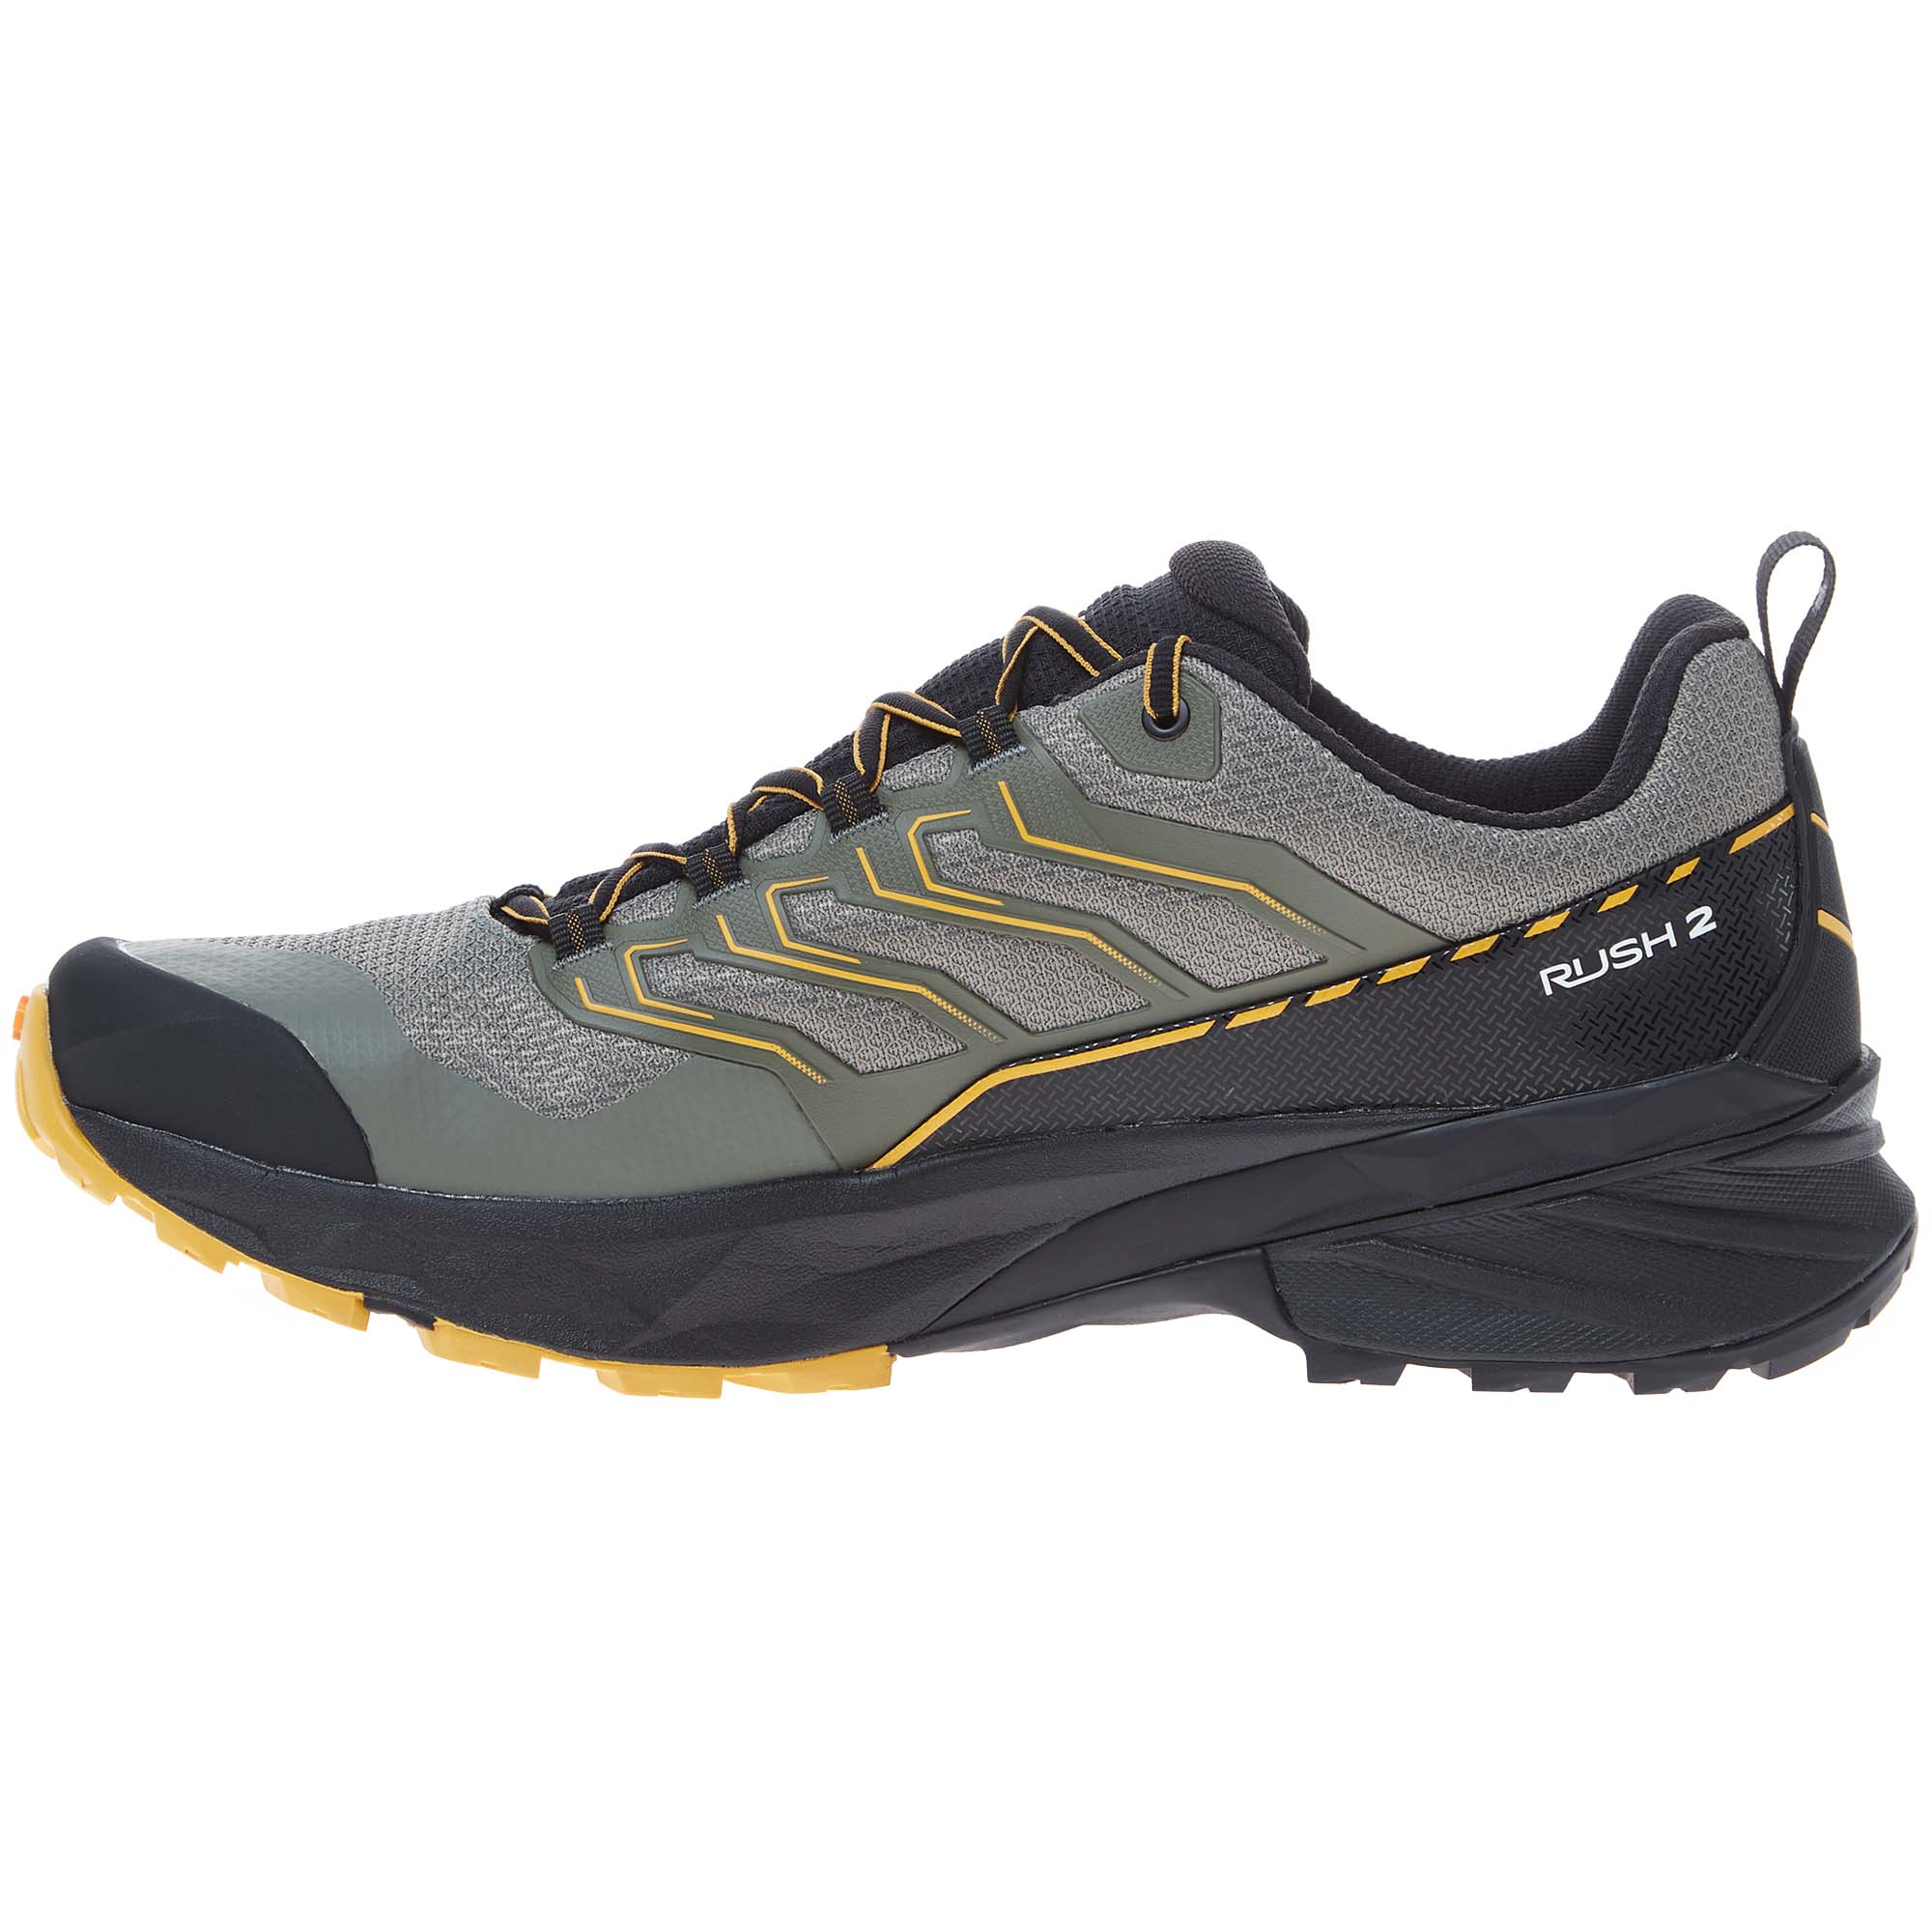 Scarpa Rush GTX 2 Hiking/Walking Shoes 